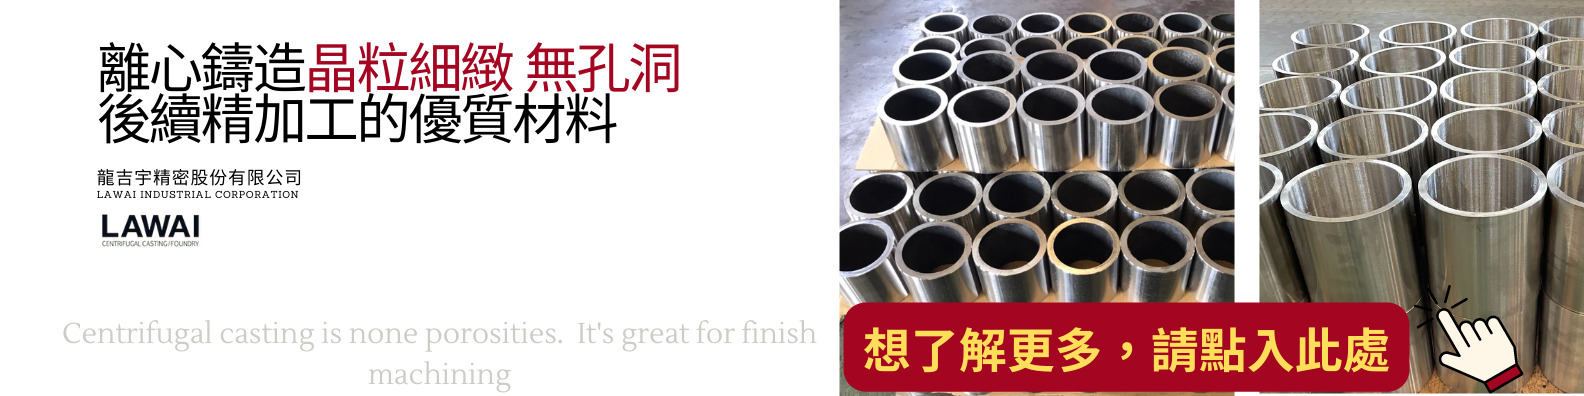 龍吉宇精密股份有限公司專門製作不銹鋼軸套以及不鏽鋼襯套藉由離心鑄造技術